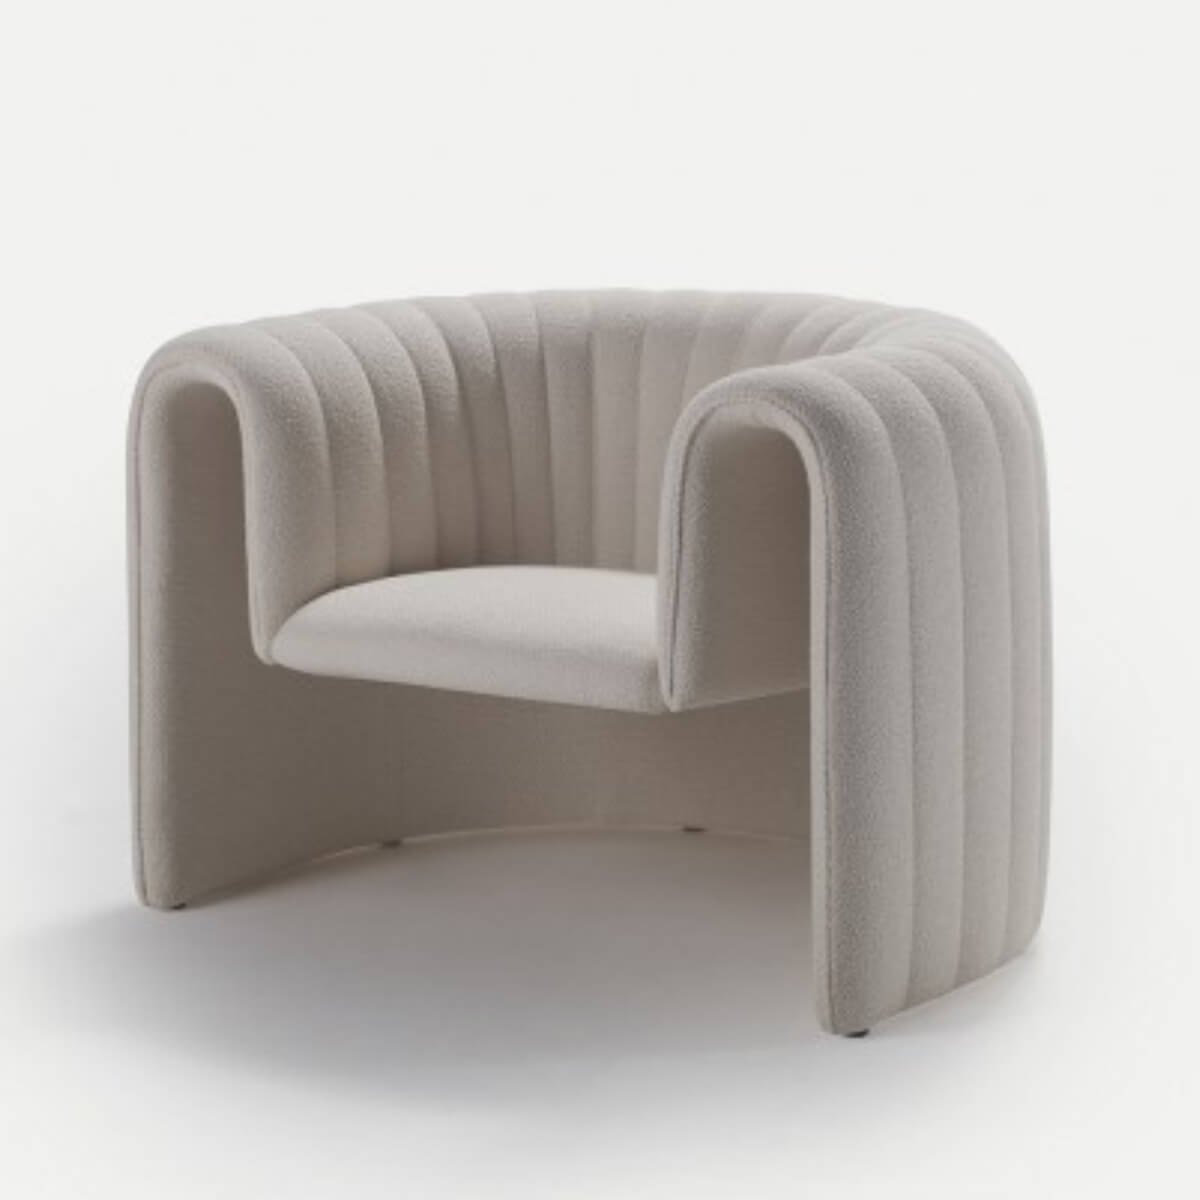 Designer-armchair-in-Australia-1